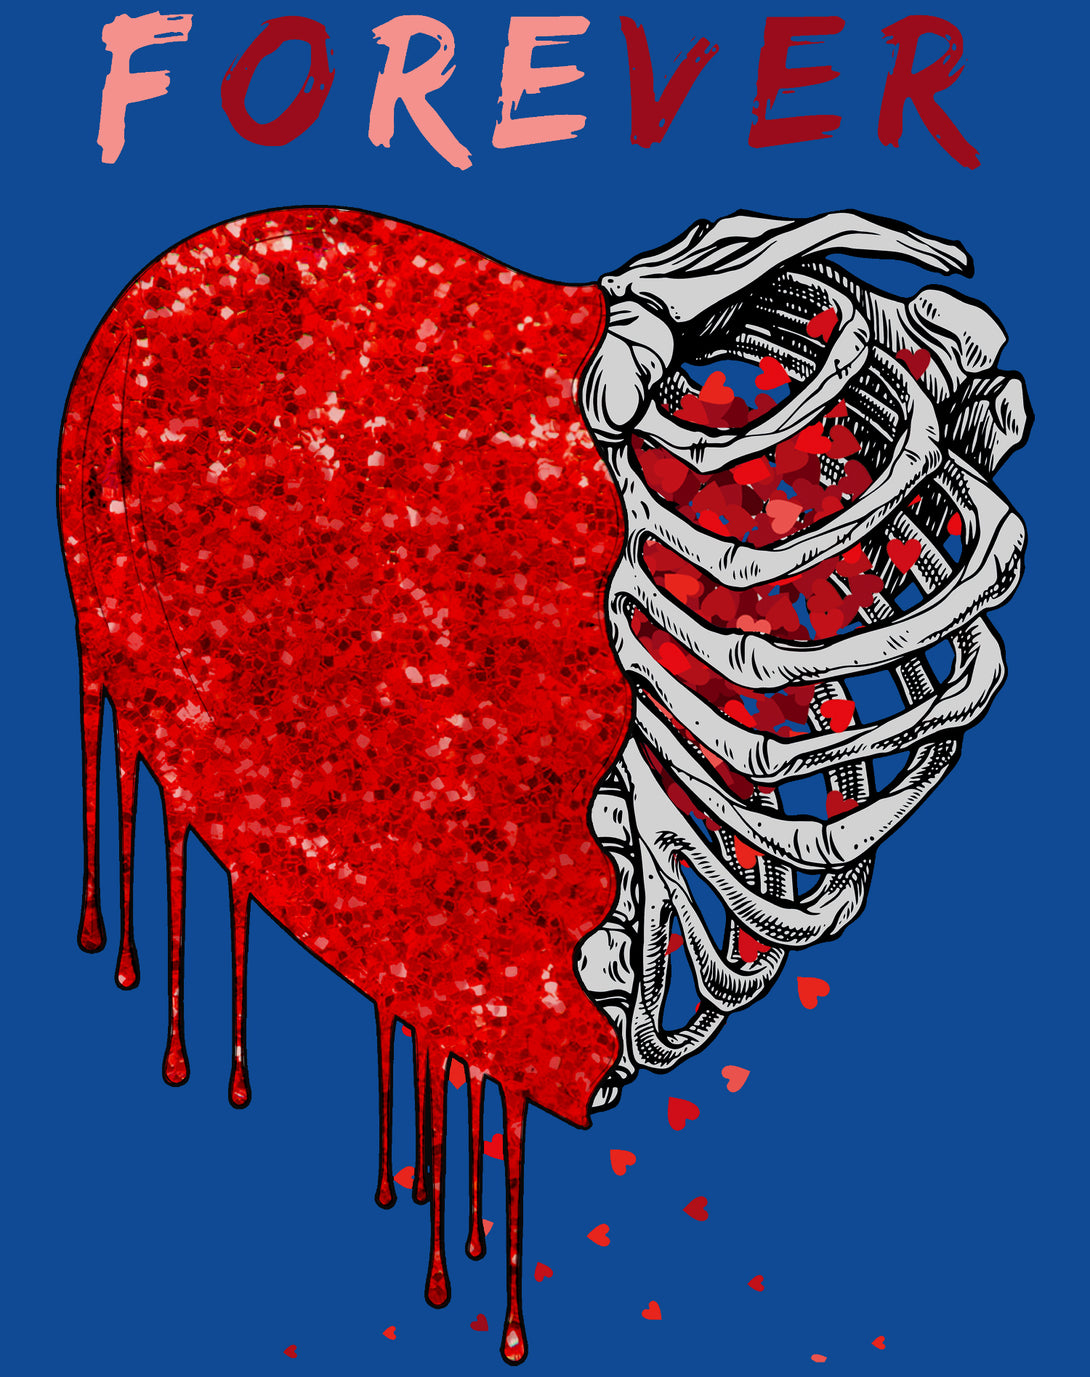 Valentine Graphic Bleeding Sparkle Heart Wild Love Forever Men's T-shirt Blue - Urban Species